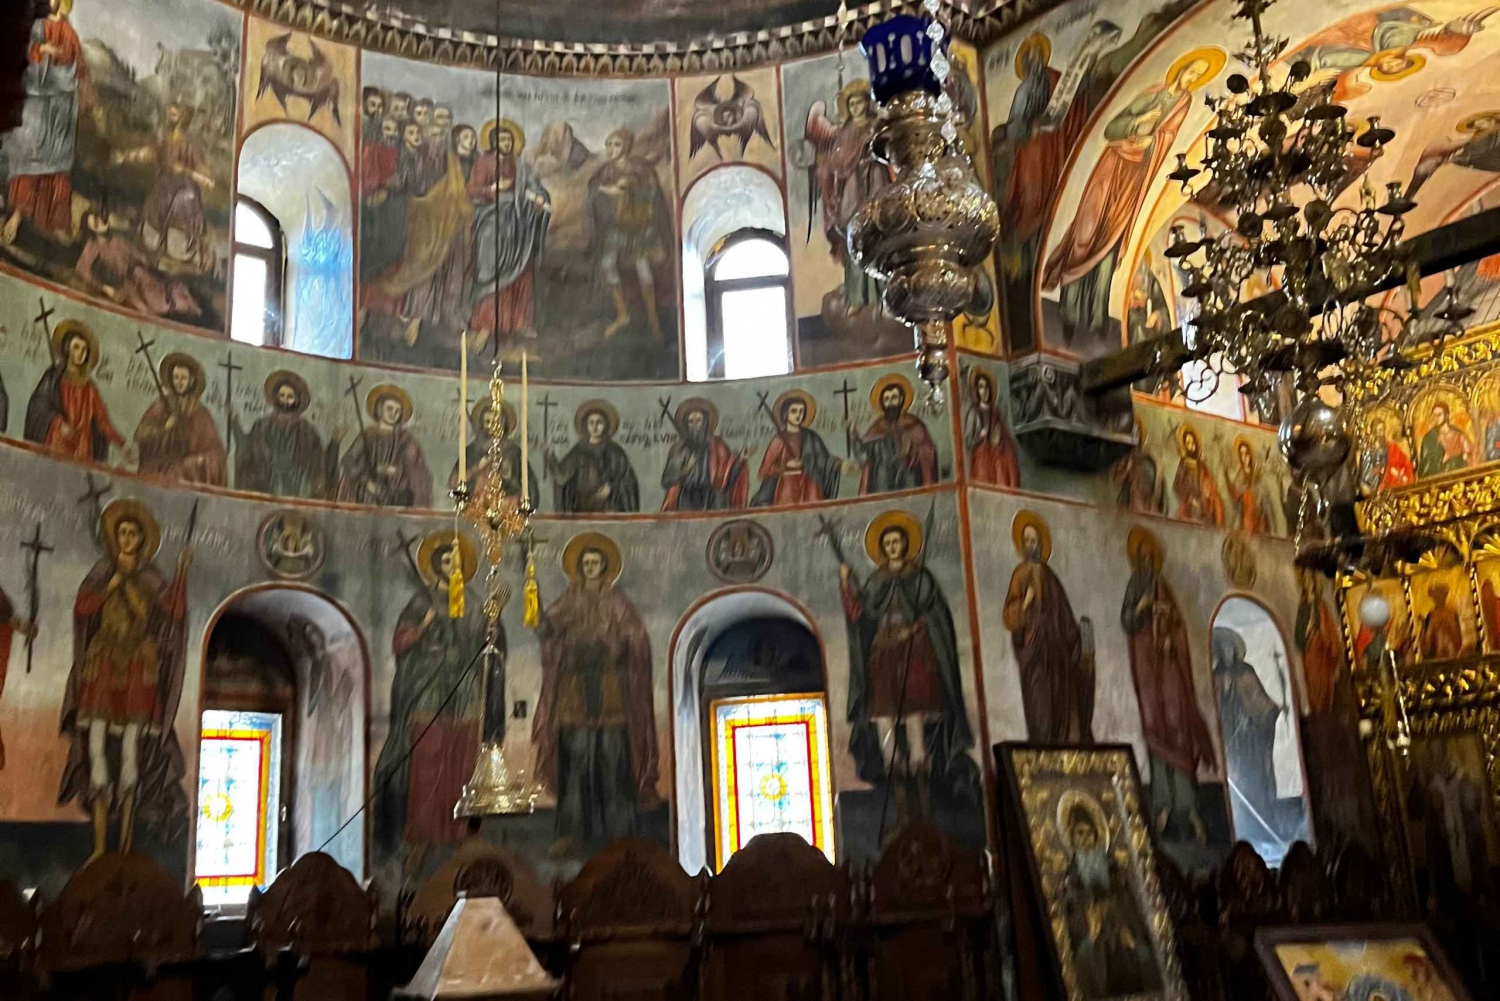 Sofia day tour to Plovdiv old town whit Bachkovski monastery